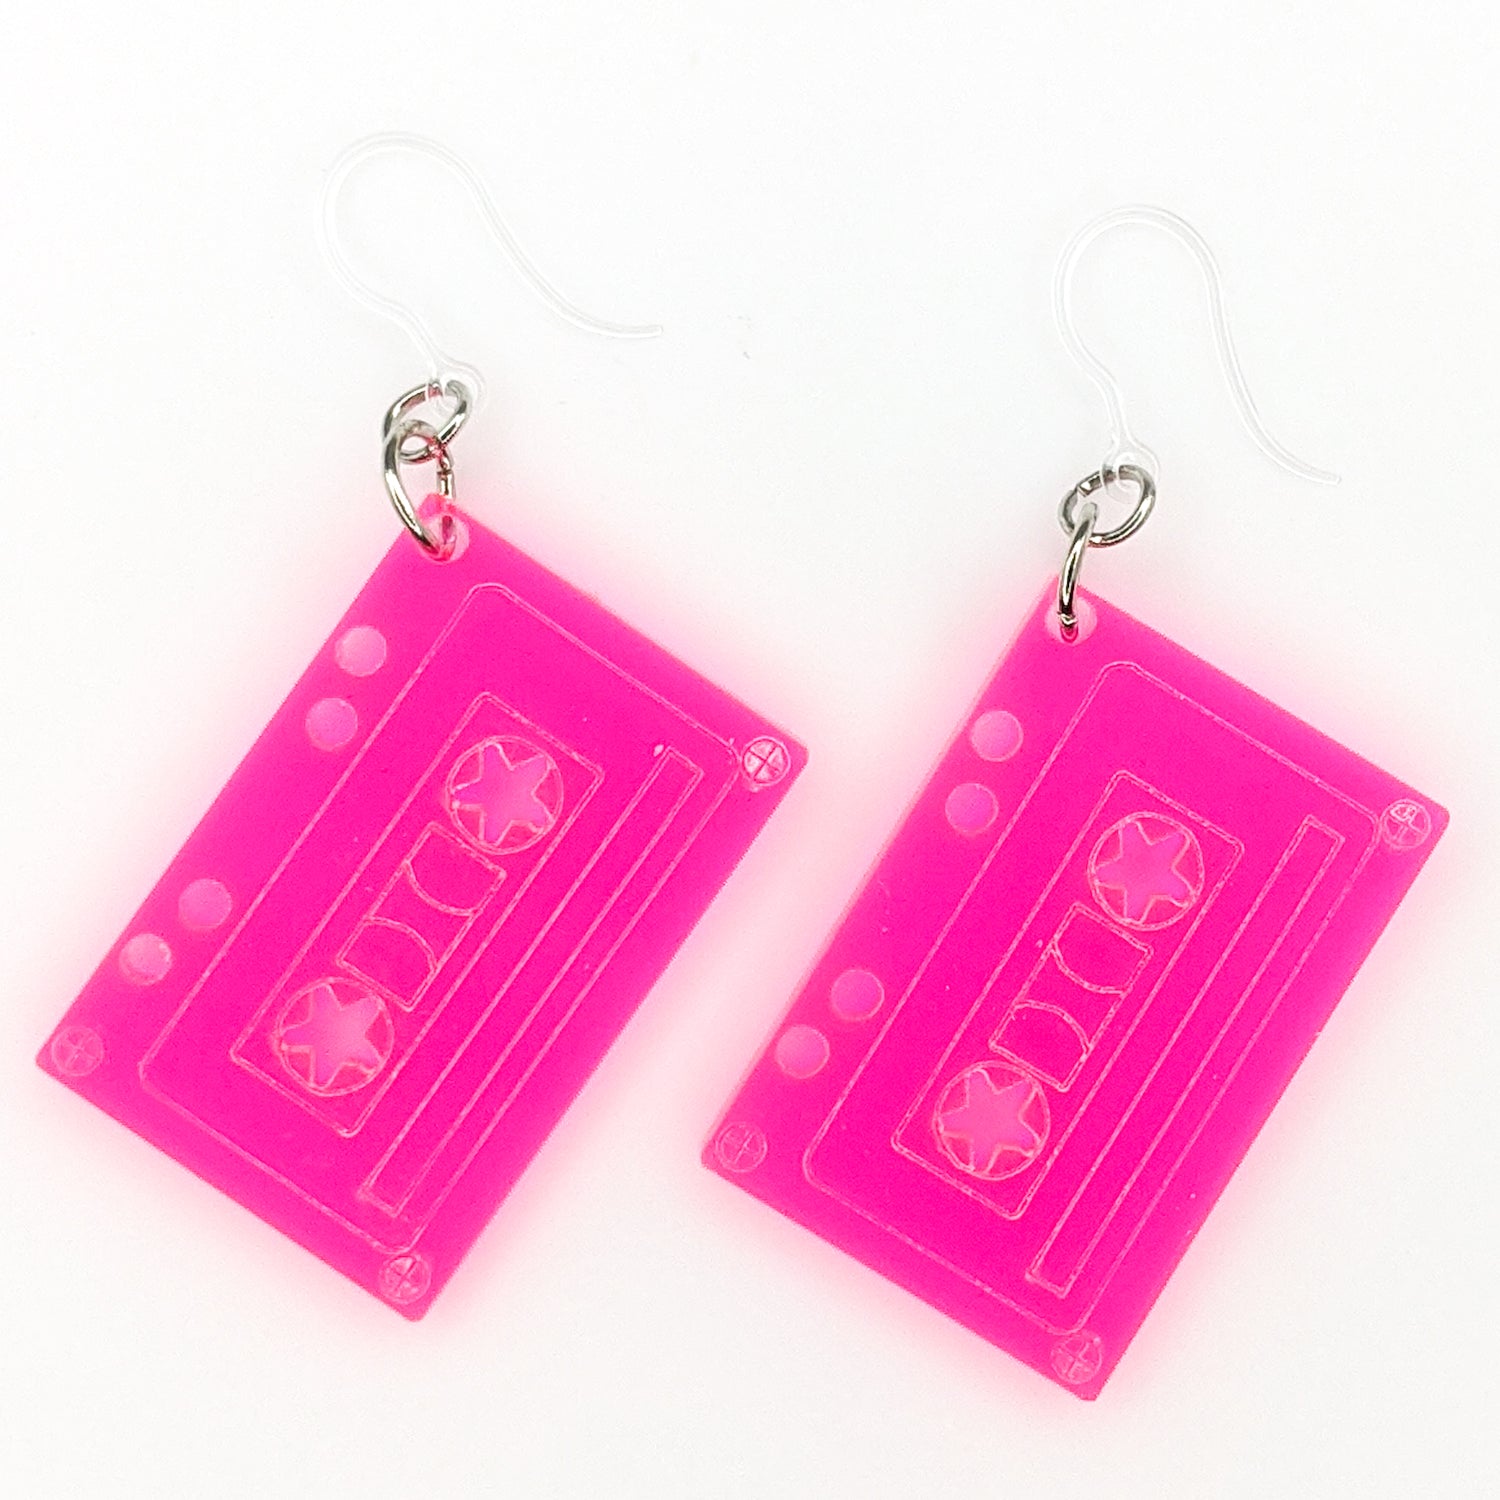 Cassette Tape Earrings (Dangles) - pink